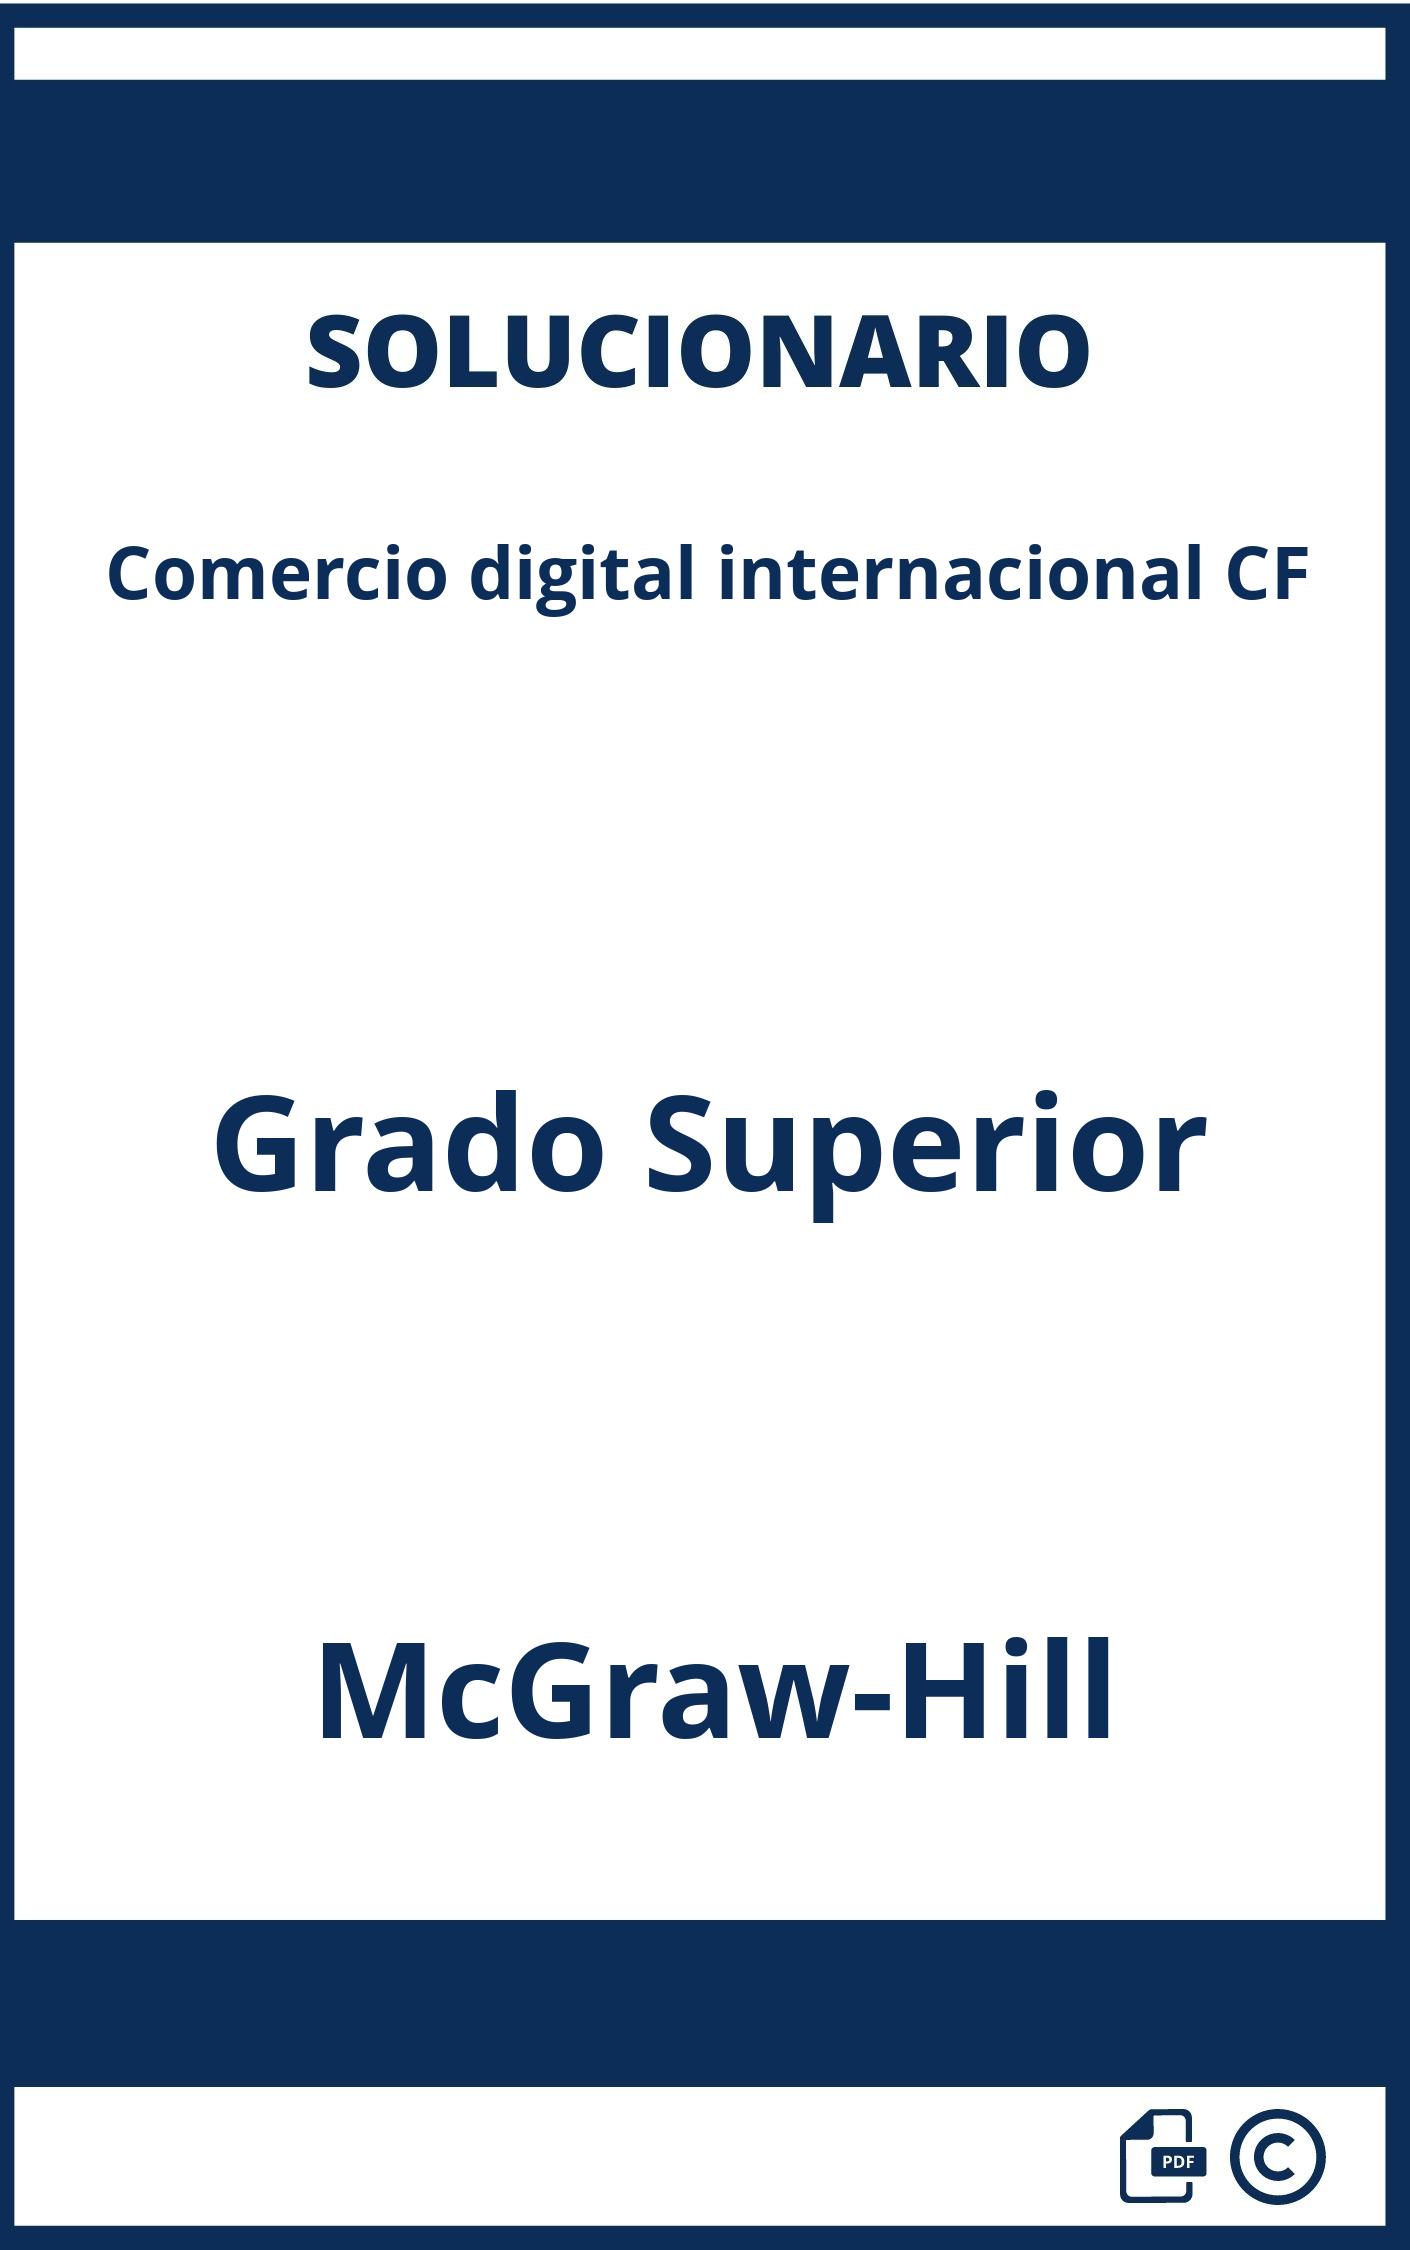 Solucionario Comercio digital internacional CF Grado Superior McGraw-Hill